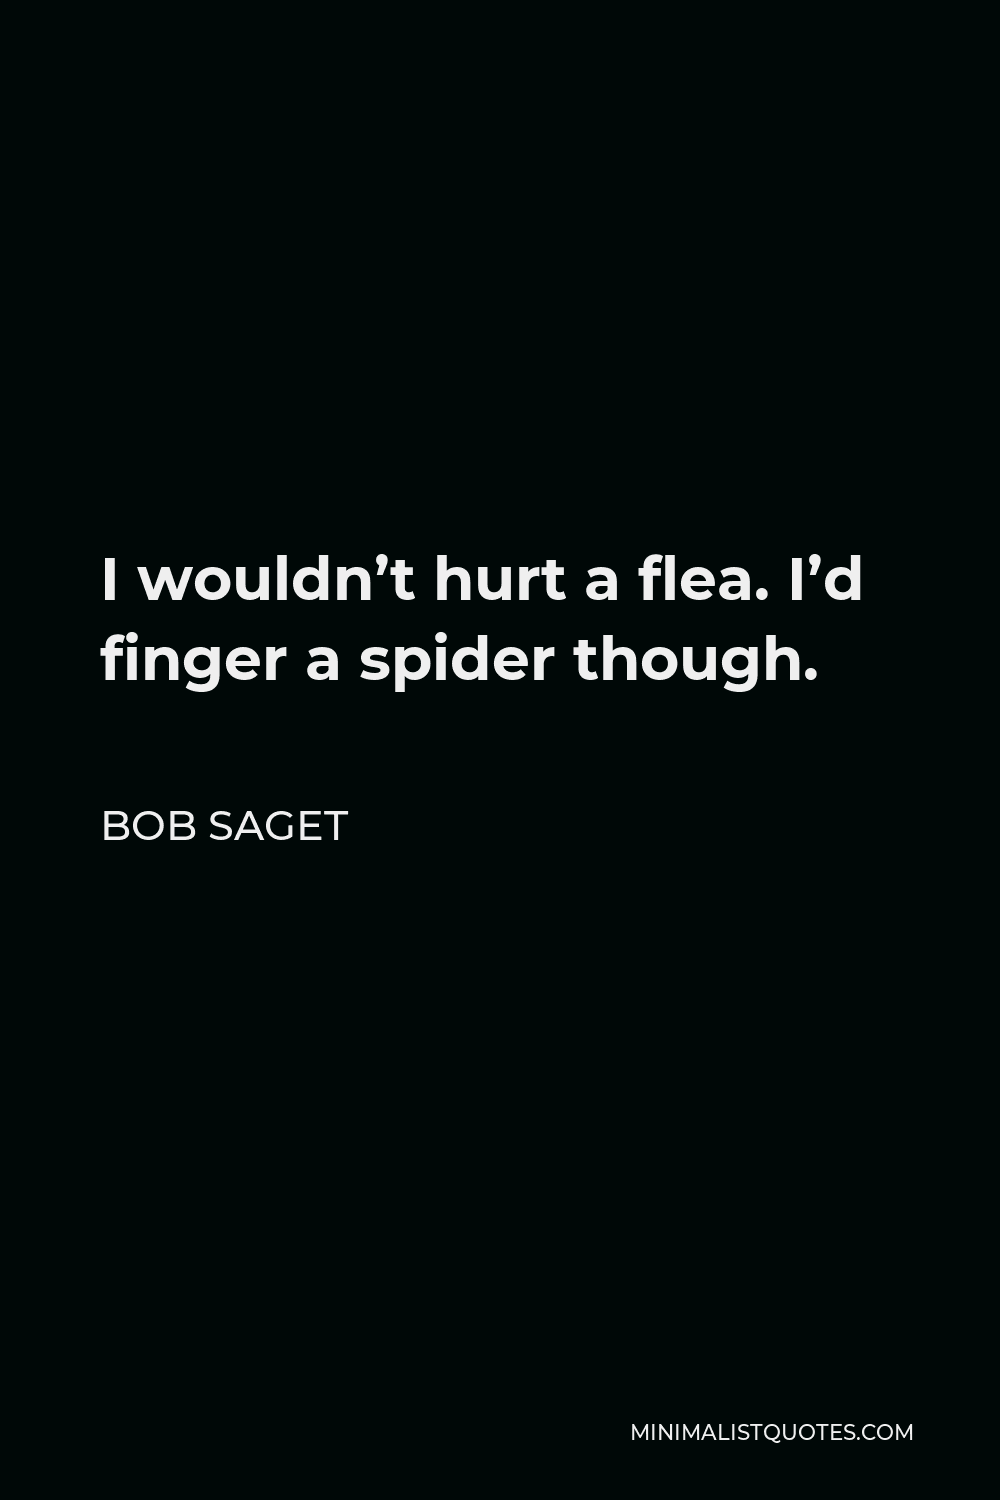 Bob Saget Quote - I wouldn’t hurt a flea. I’d finger a spider though.